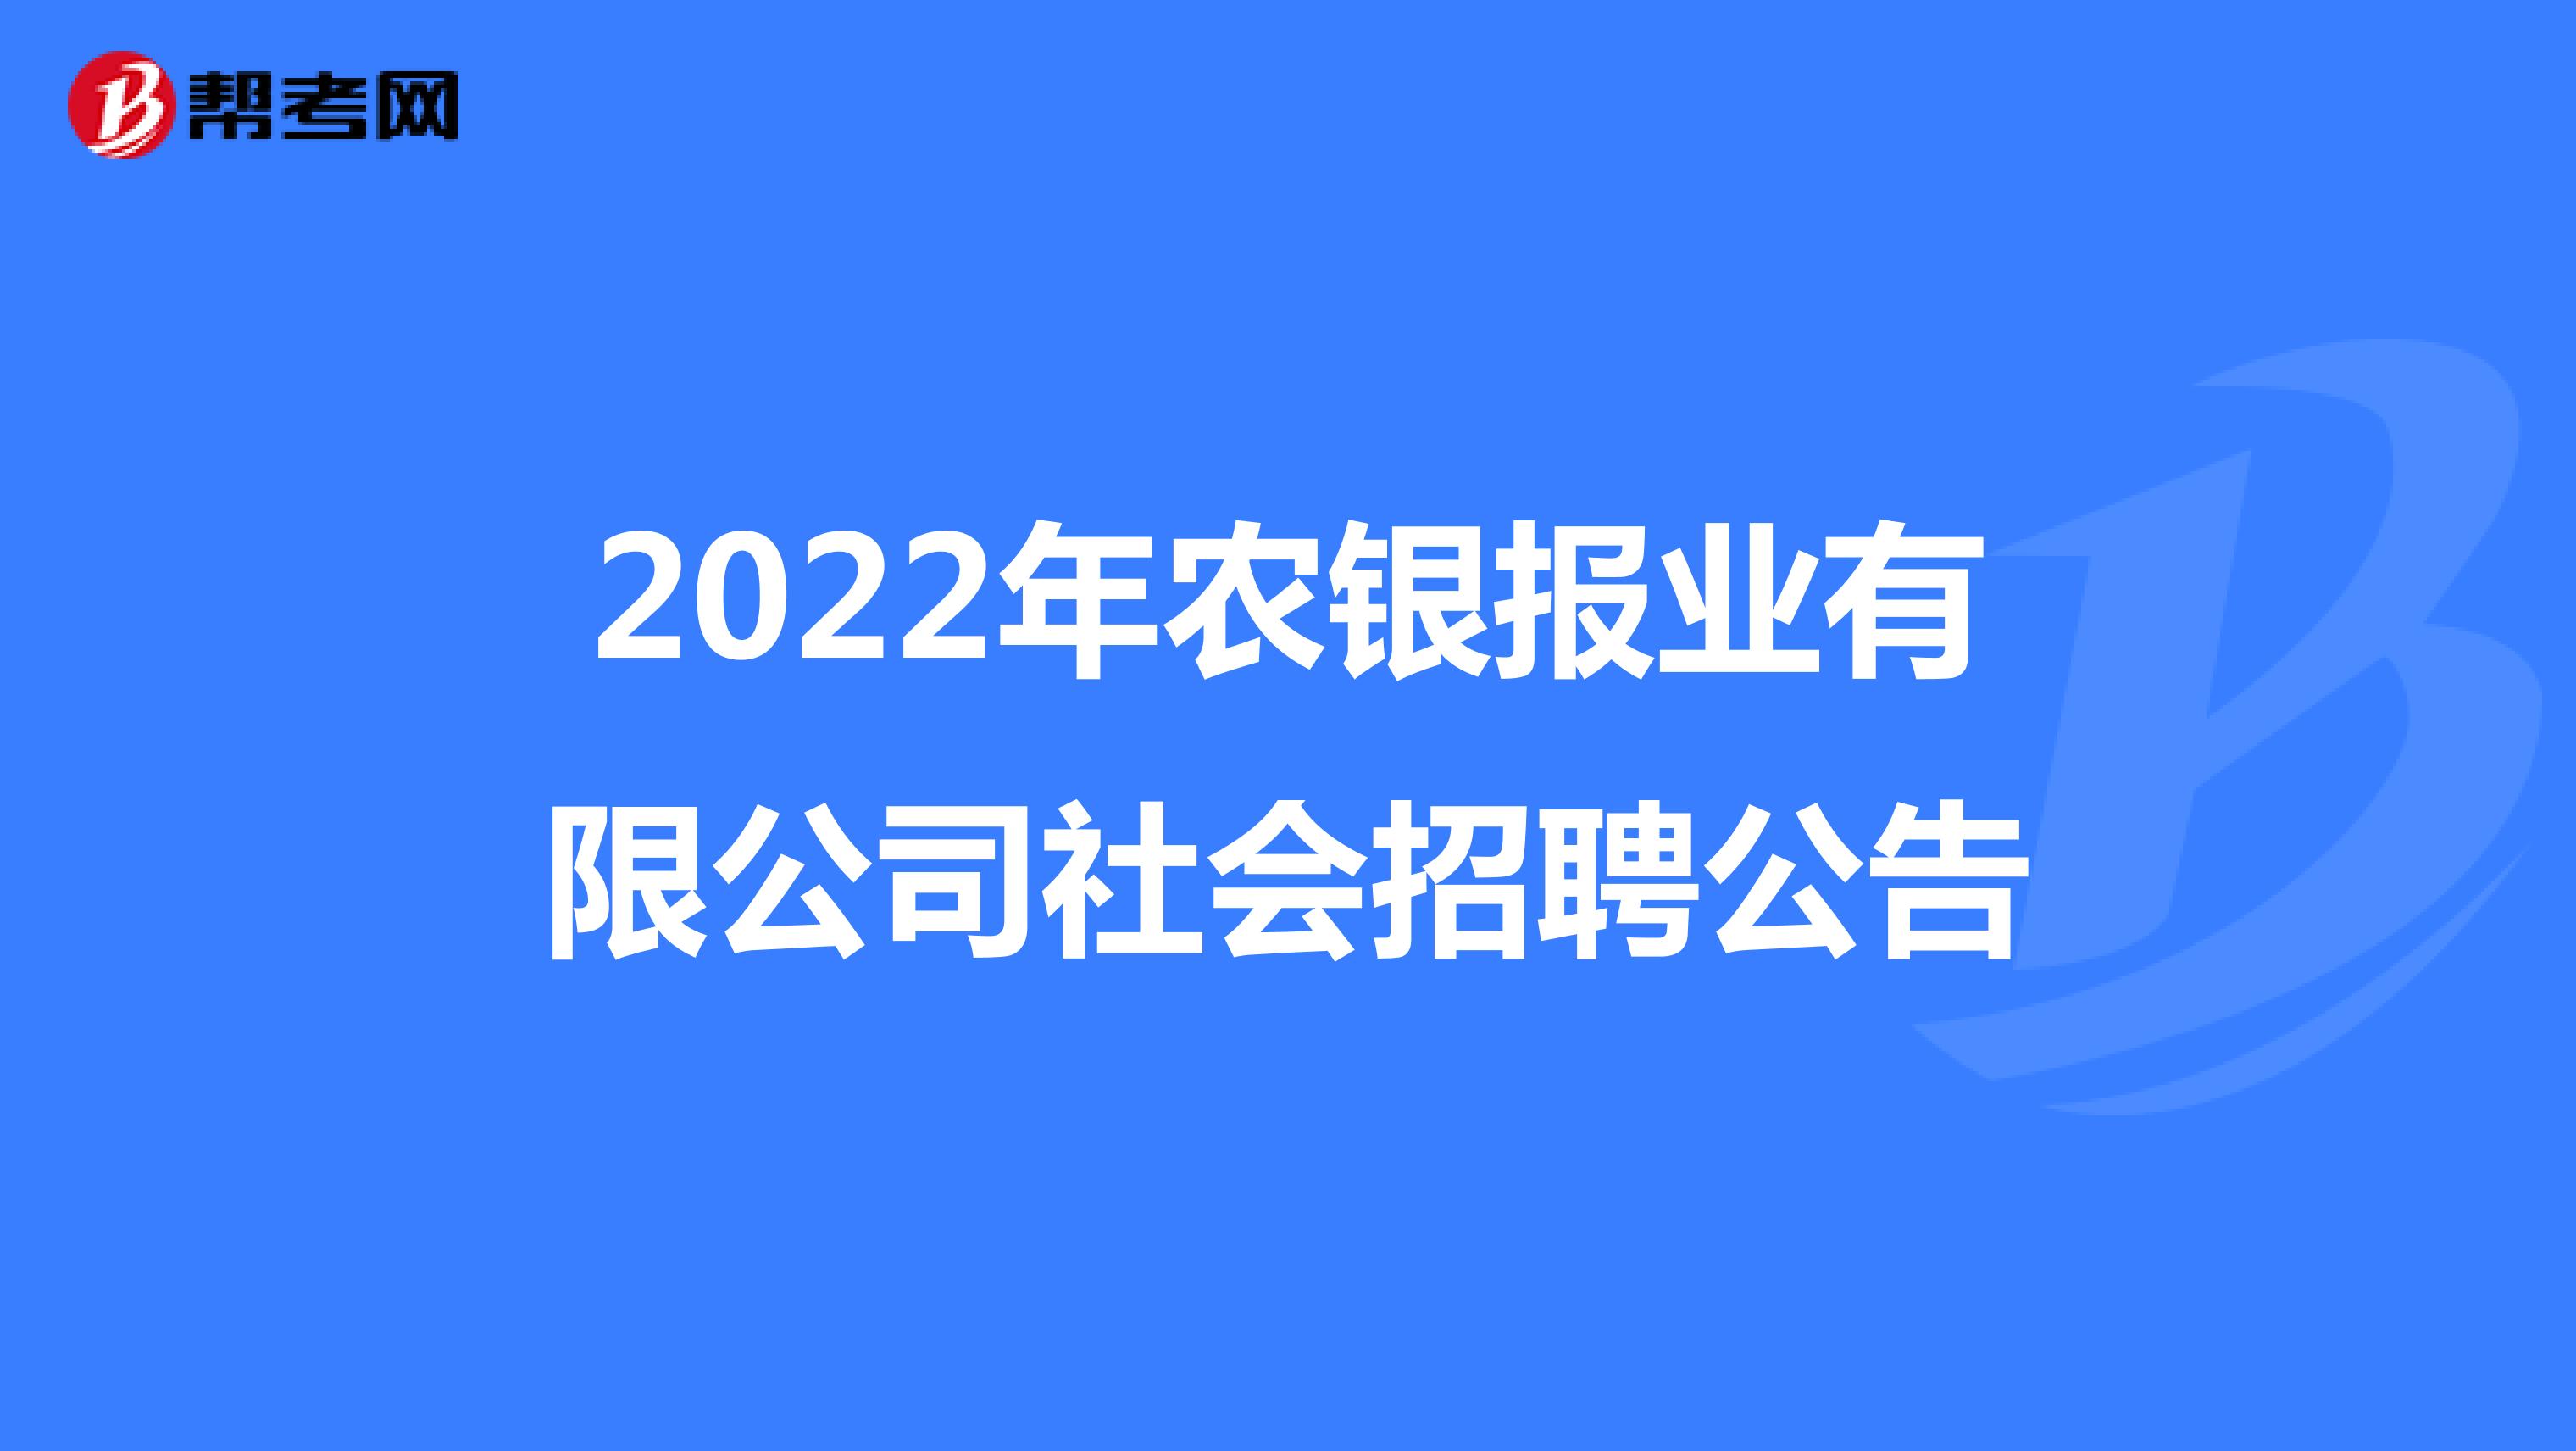 2022年农银报业有限公司社会招聘公告